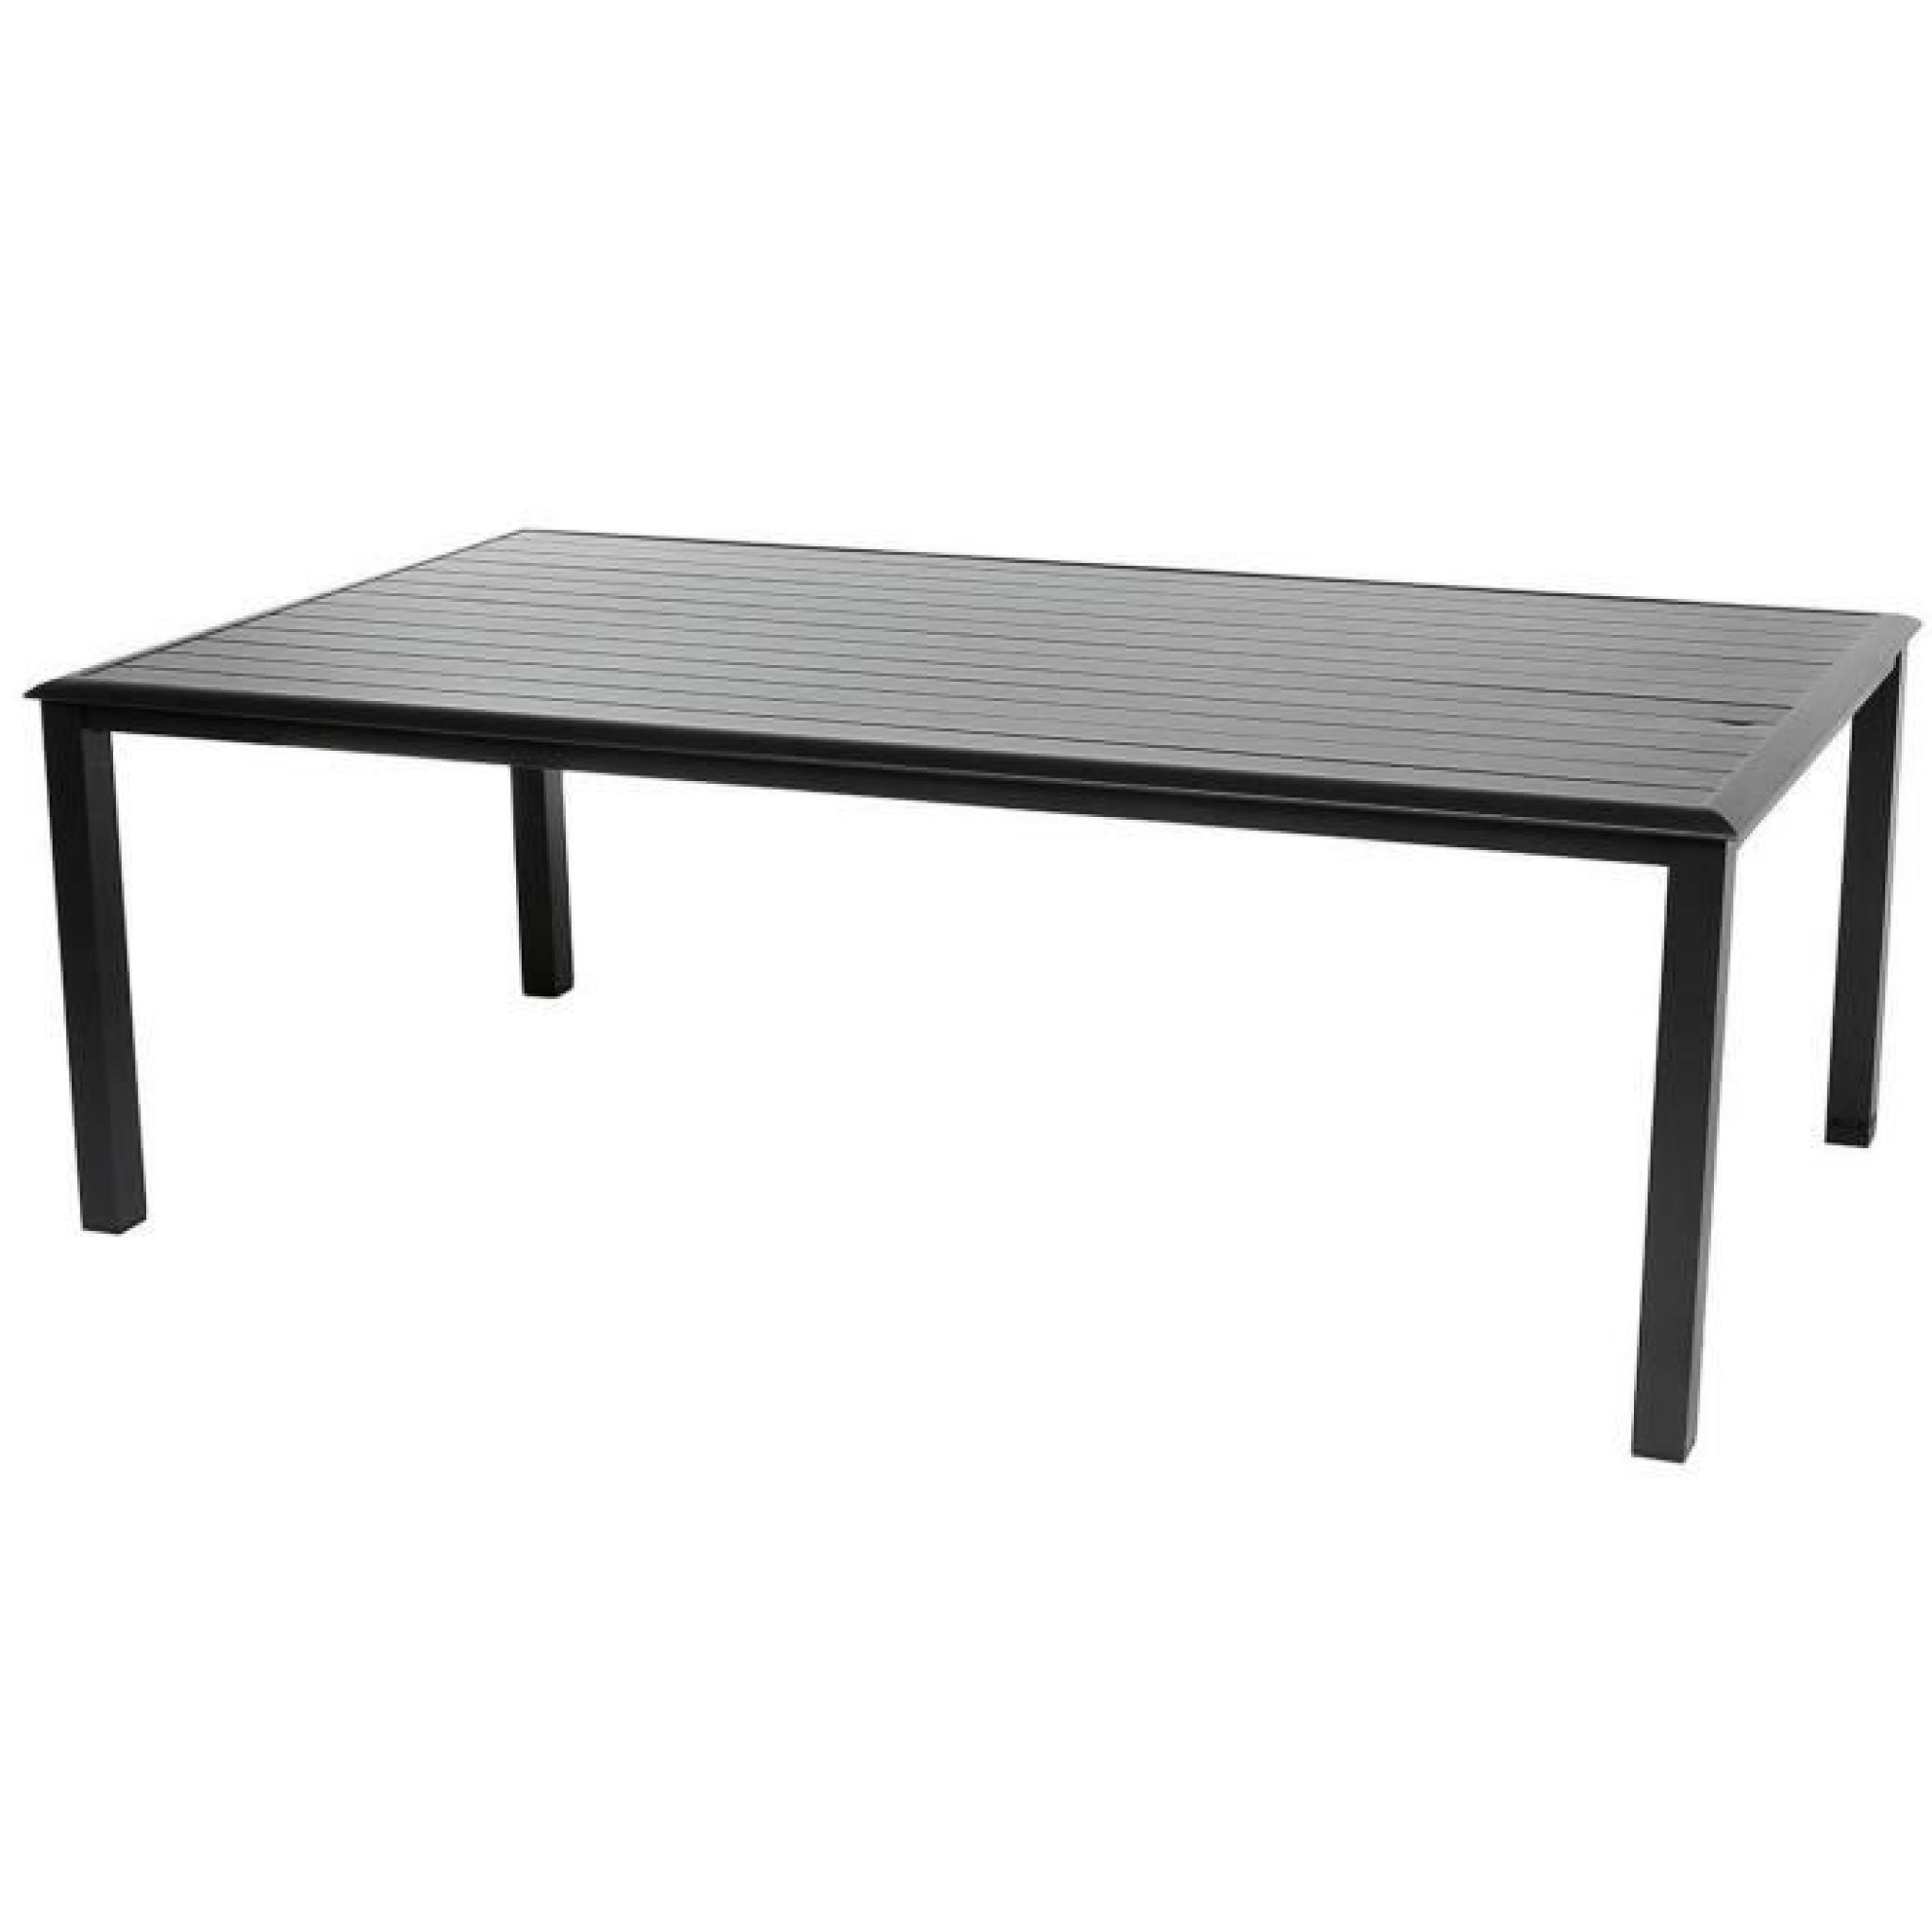 Table rectangulaire en Aluminium coloris noir - Dim : L 218 x P 118 x H 74 cm 